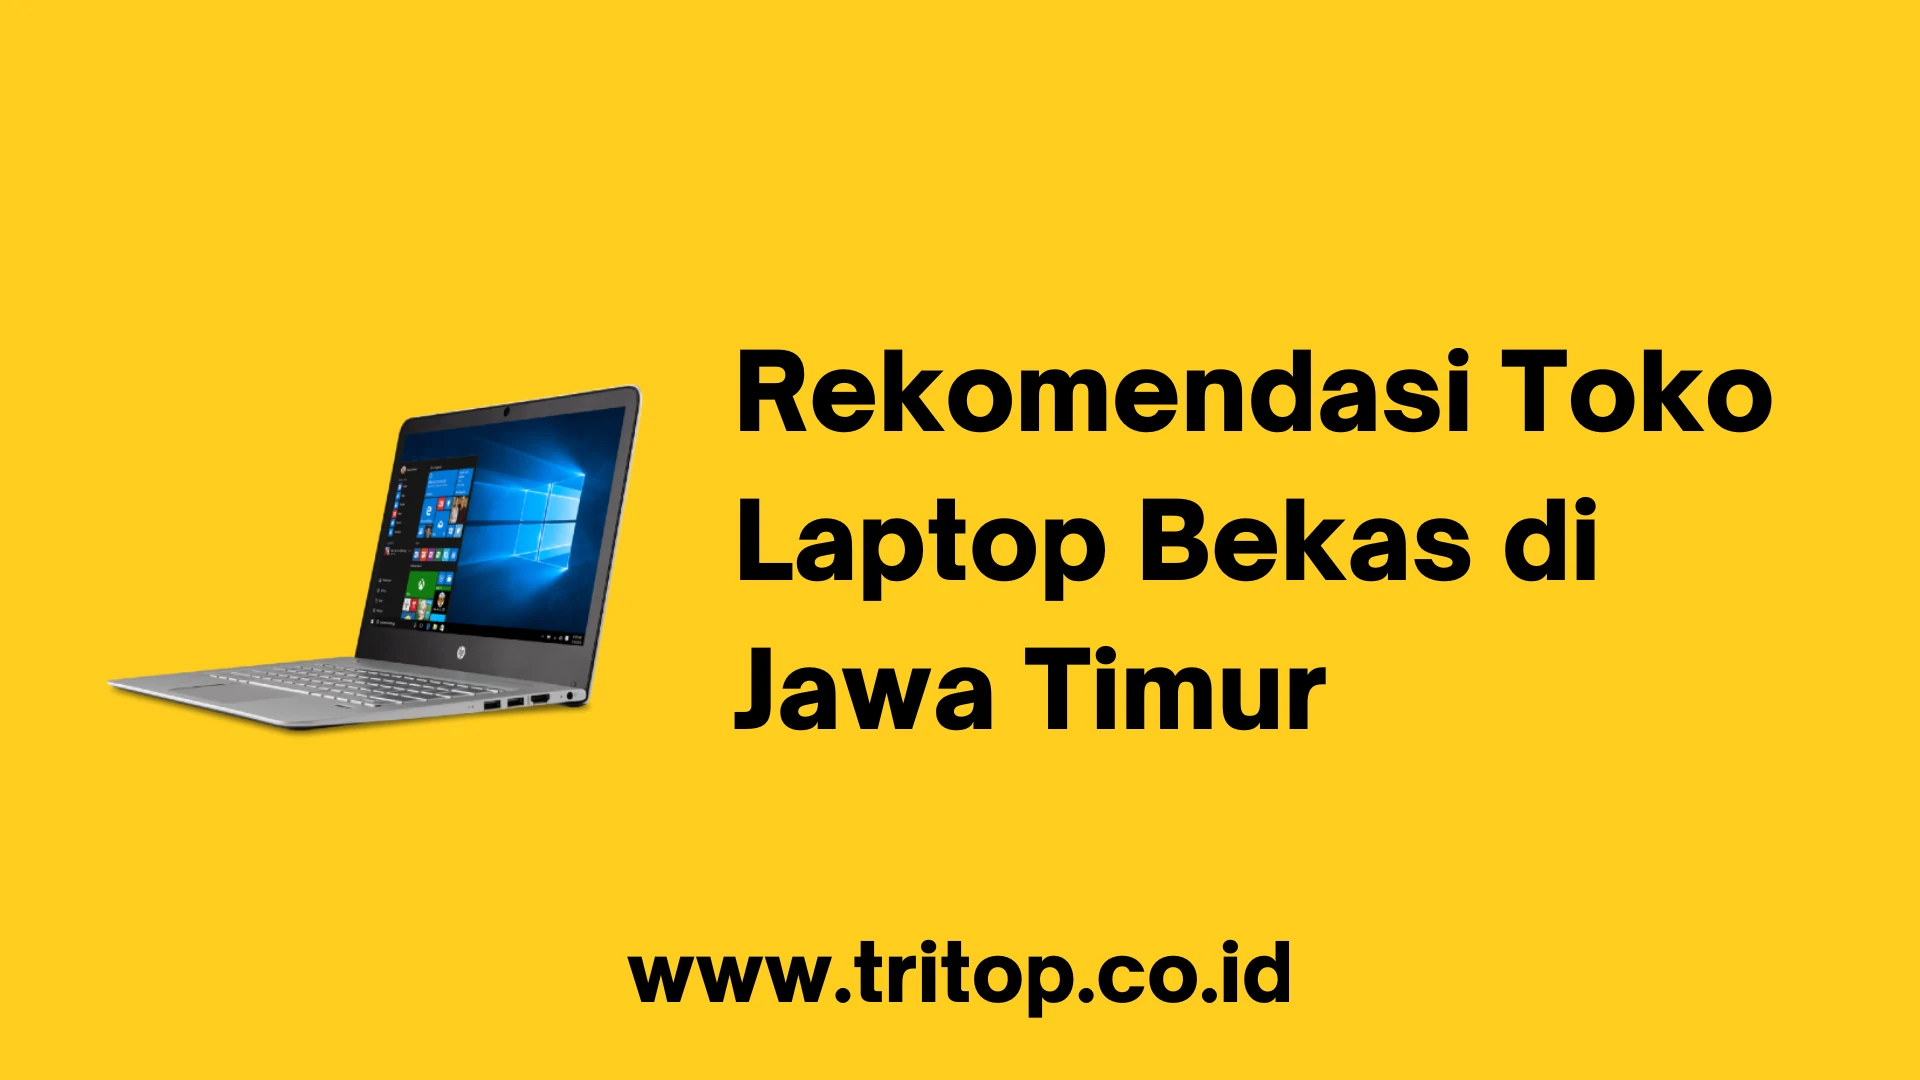 Laptop Bekas Jawa Timur